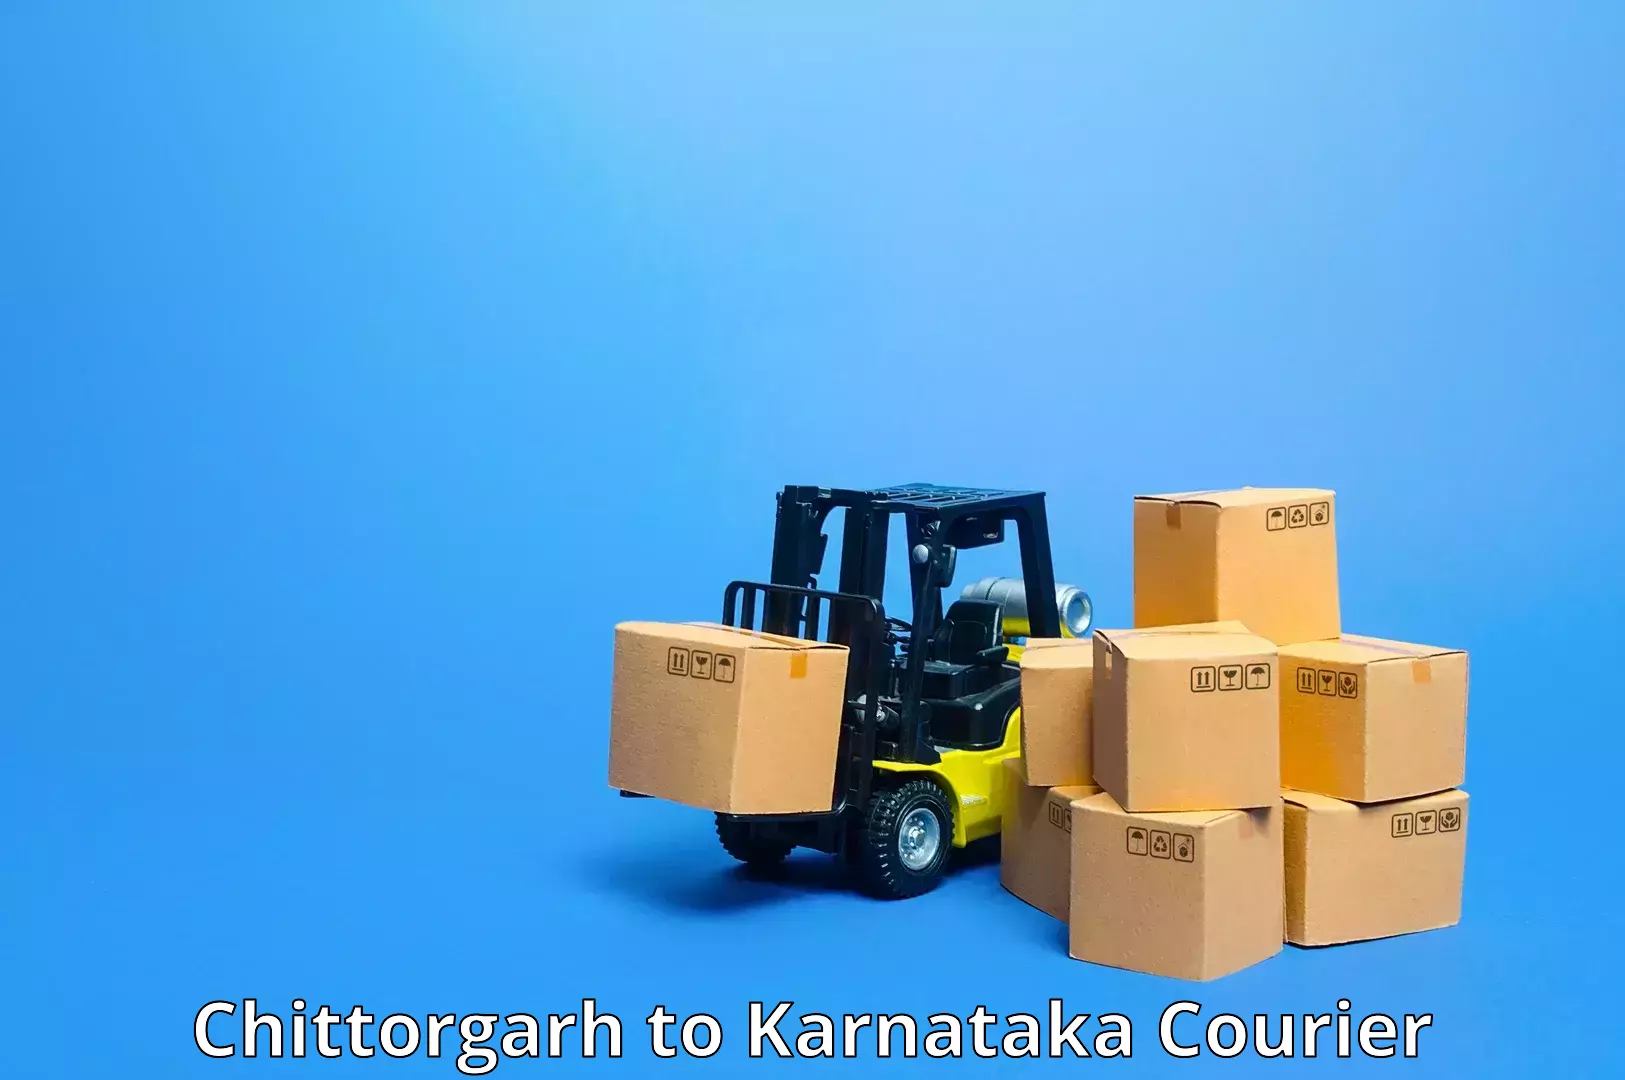 Remote area delivery Chittorgarh to Srirangapatna